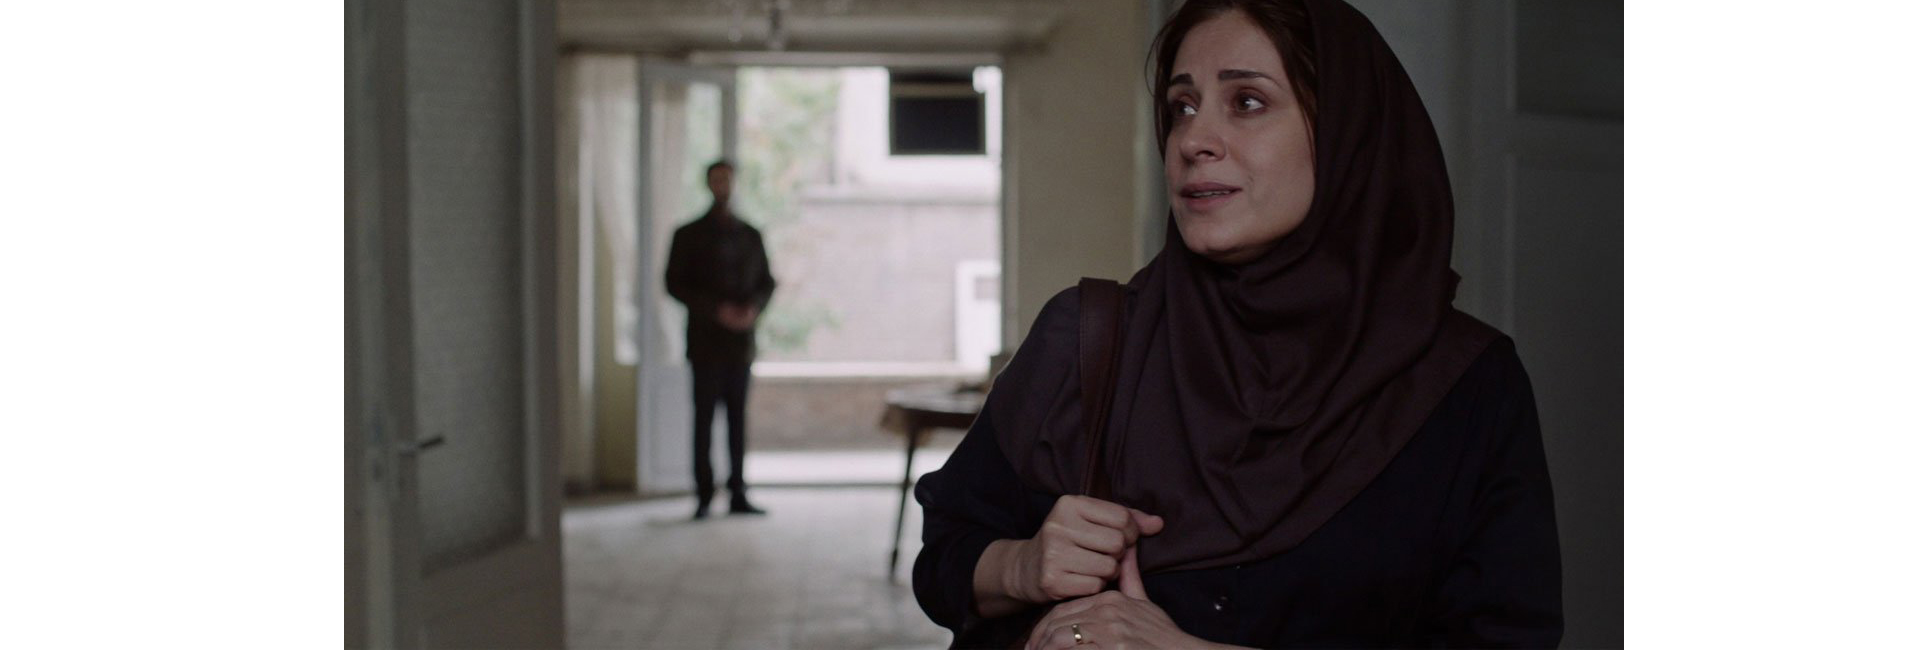 O PERDÃO, um filme de Maryam Moghadam e Behtash Sanaeeha